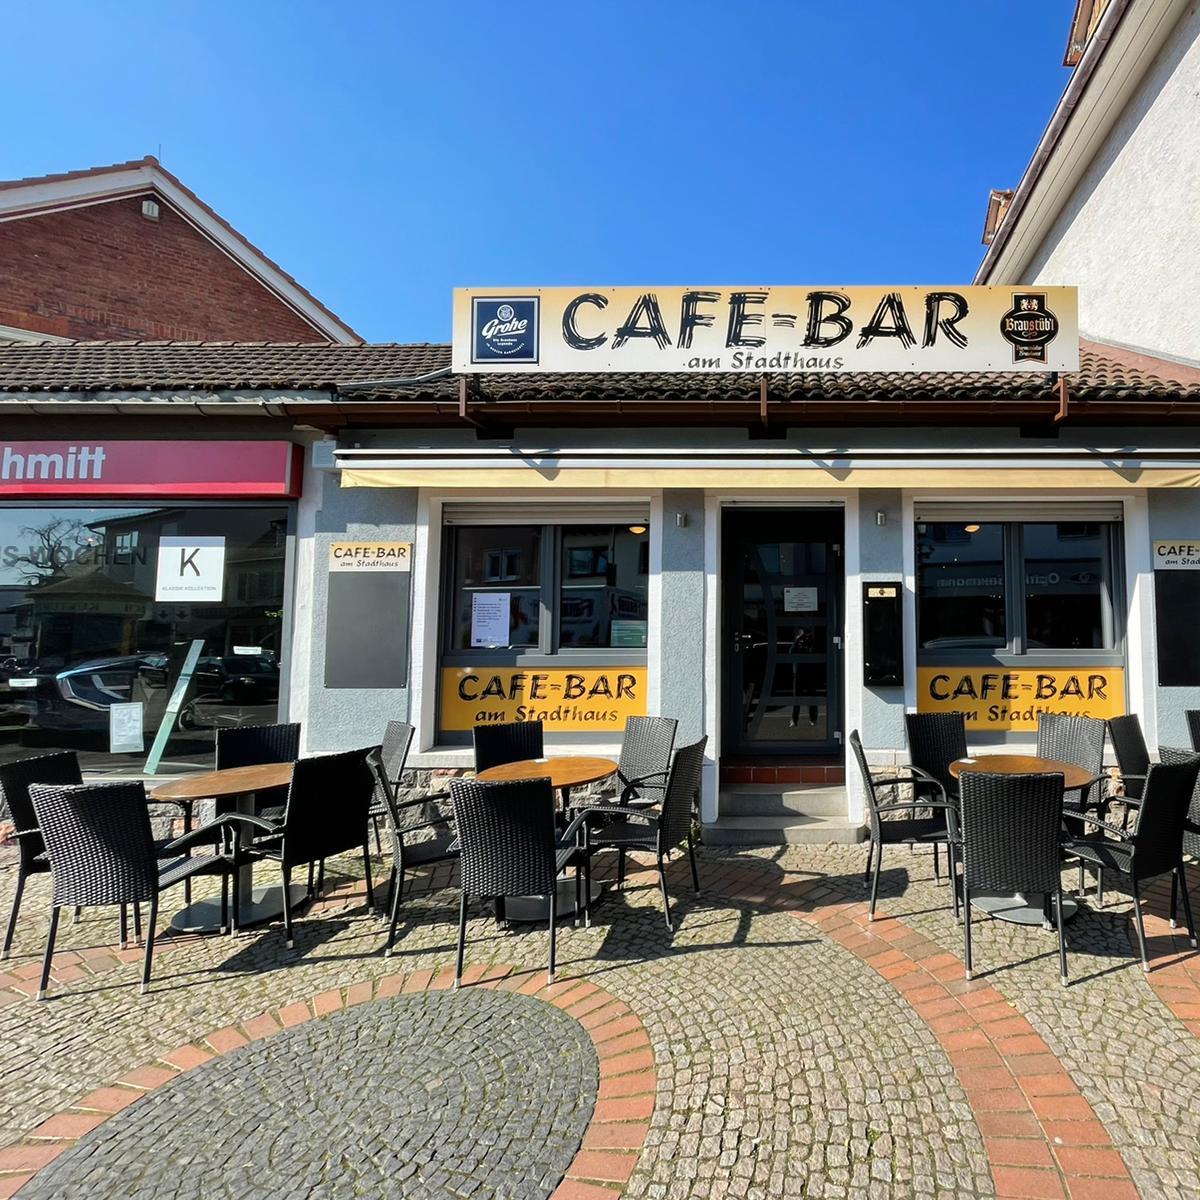 Restaurant "Café Bar am Stadthaus" in Lorsch